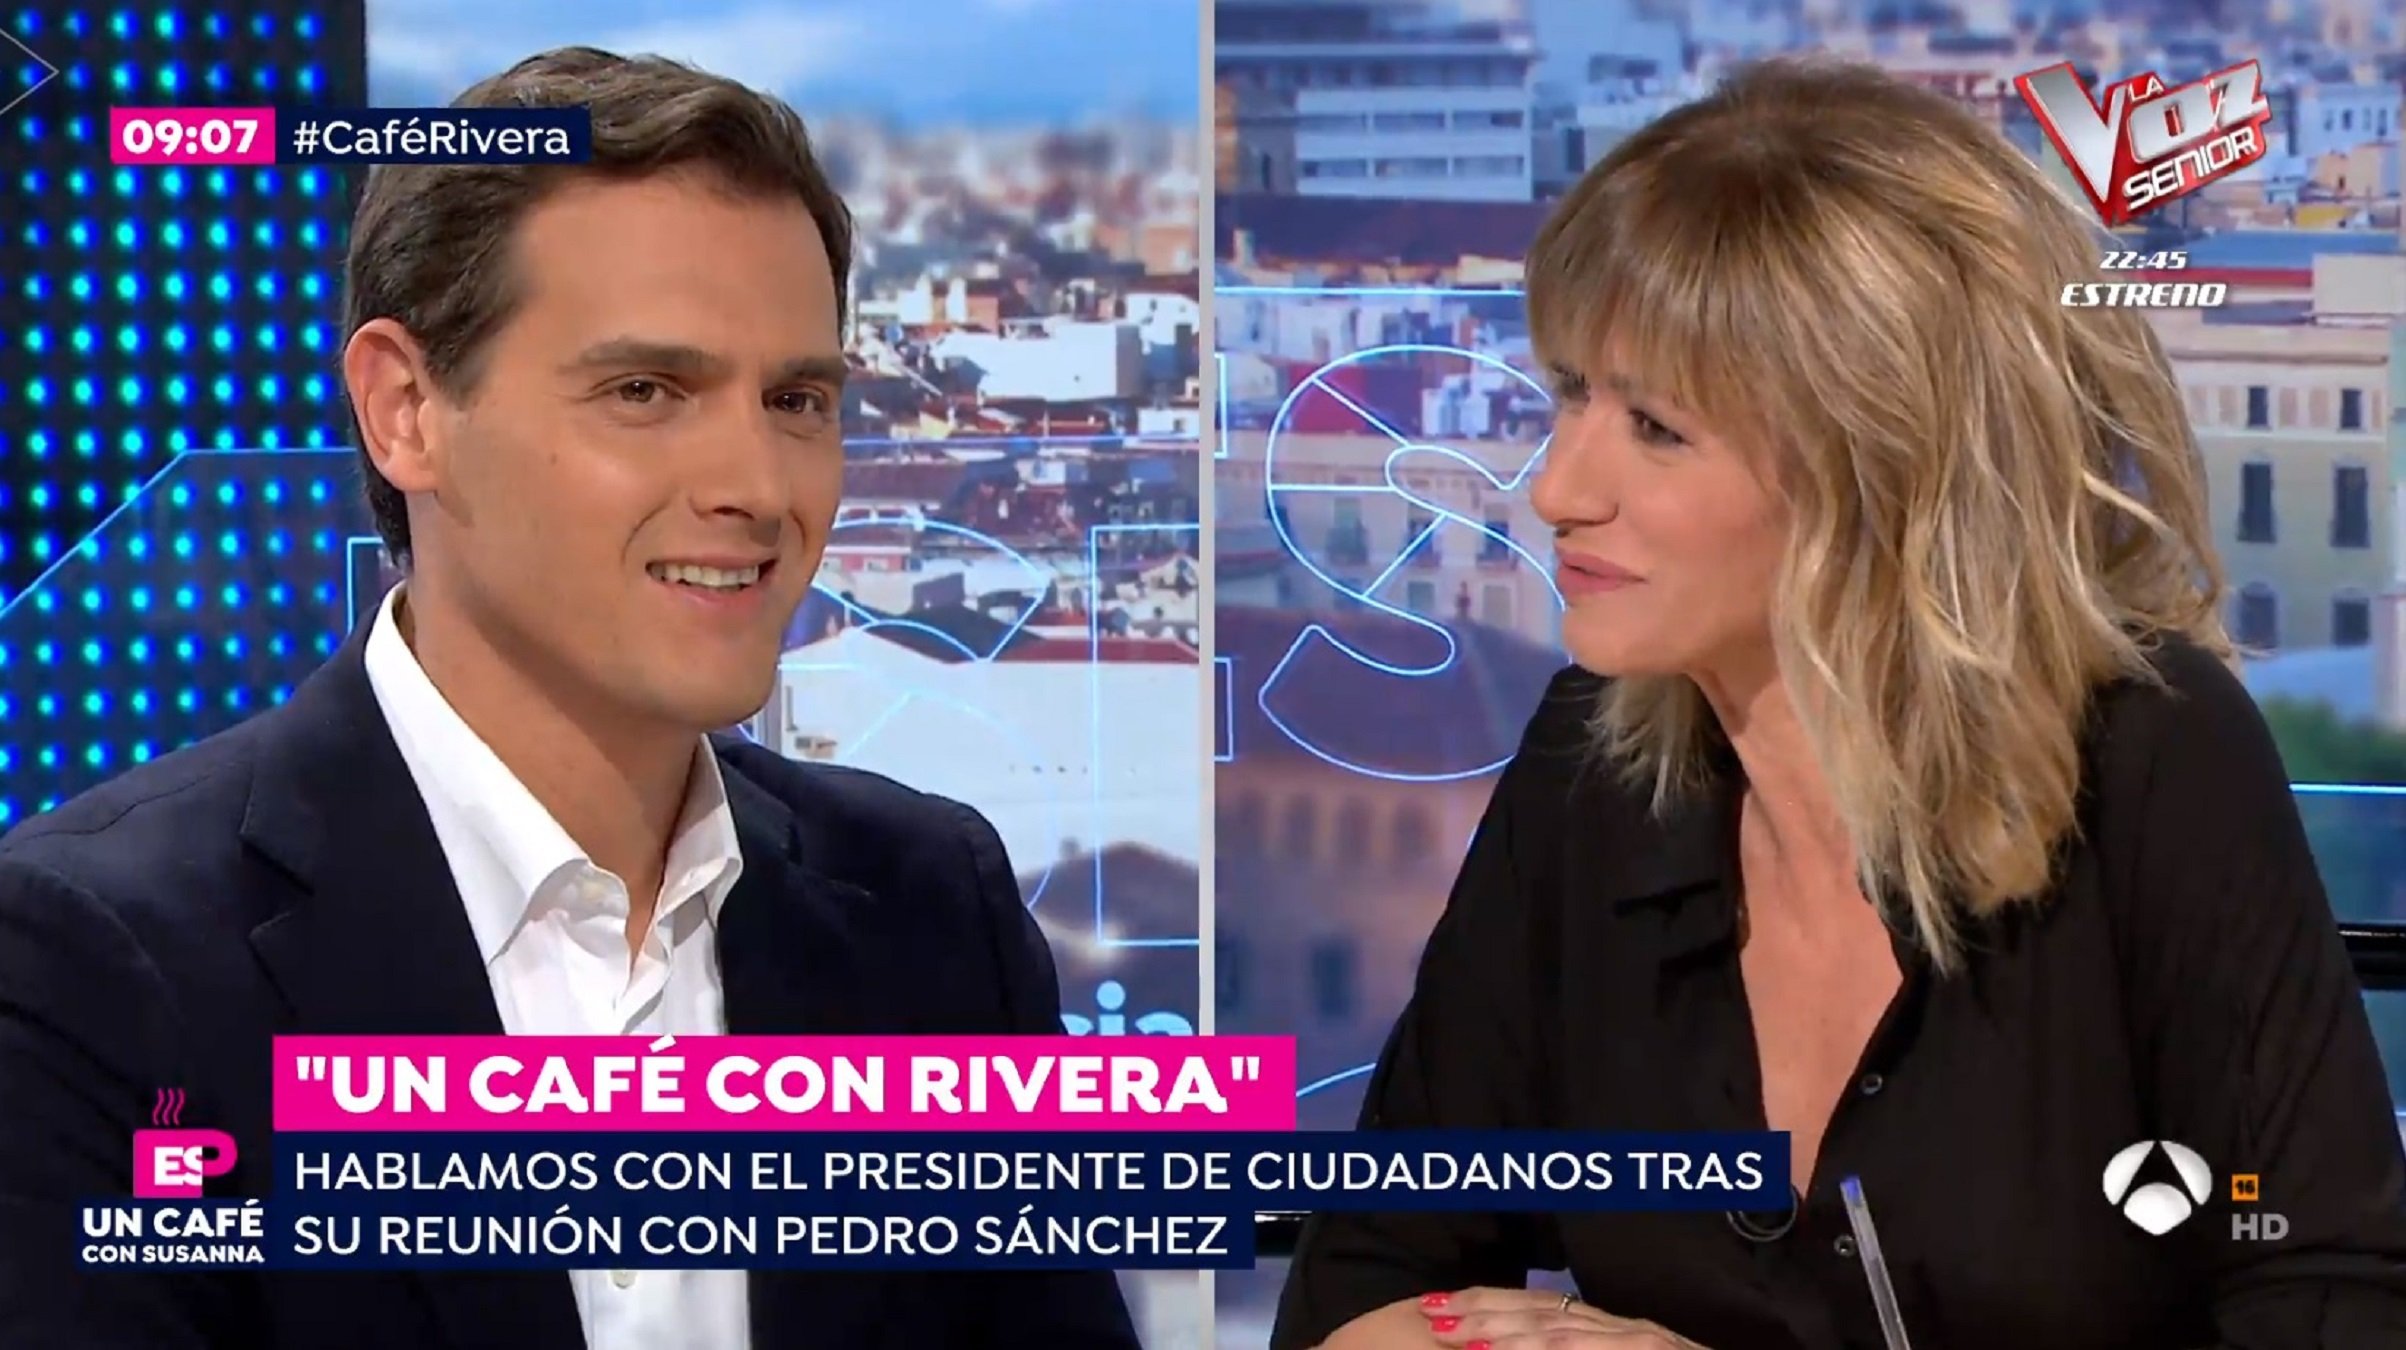 L'enèsim cafè de Rivera amb Griso encén la xarxa: "¿Porno a las 9h de la mañana?"